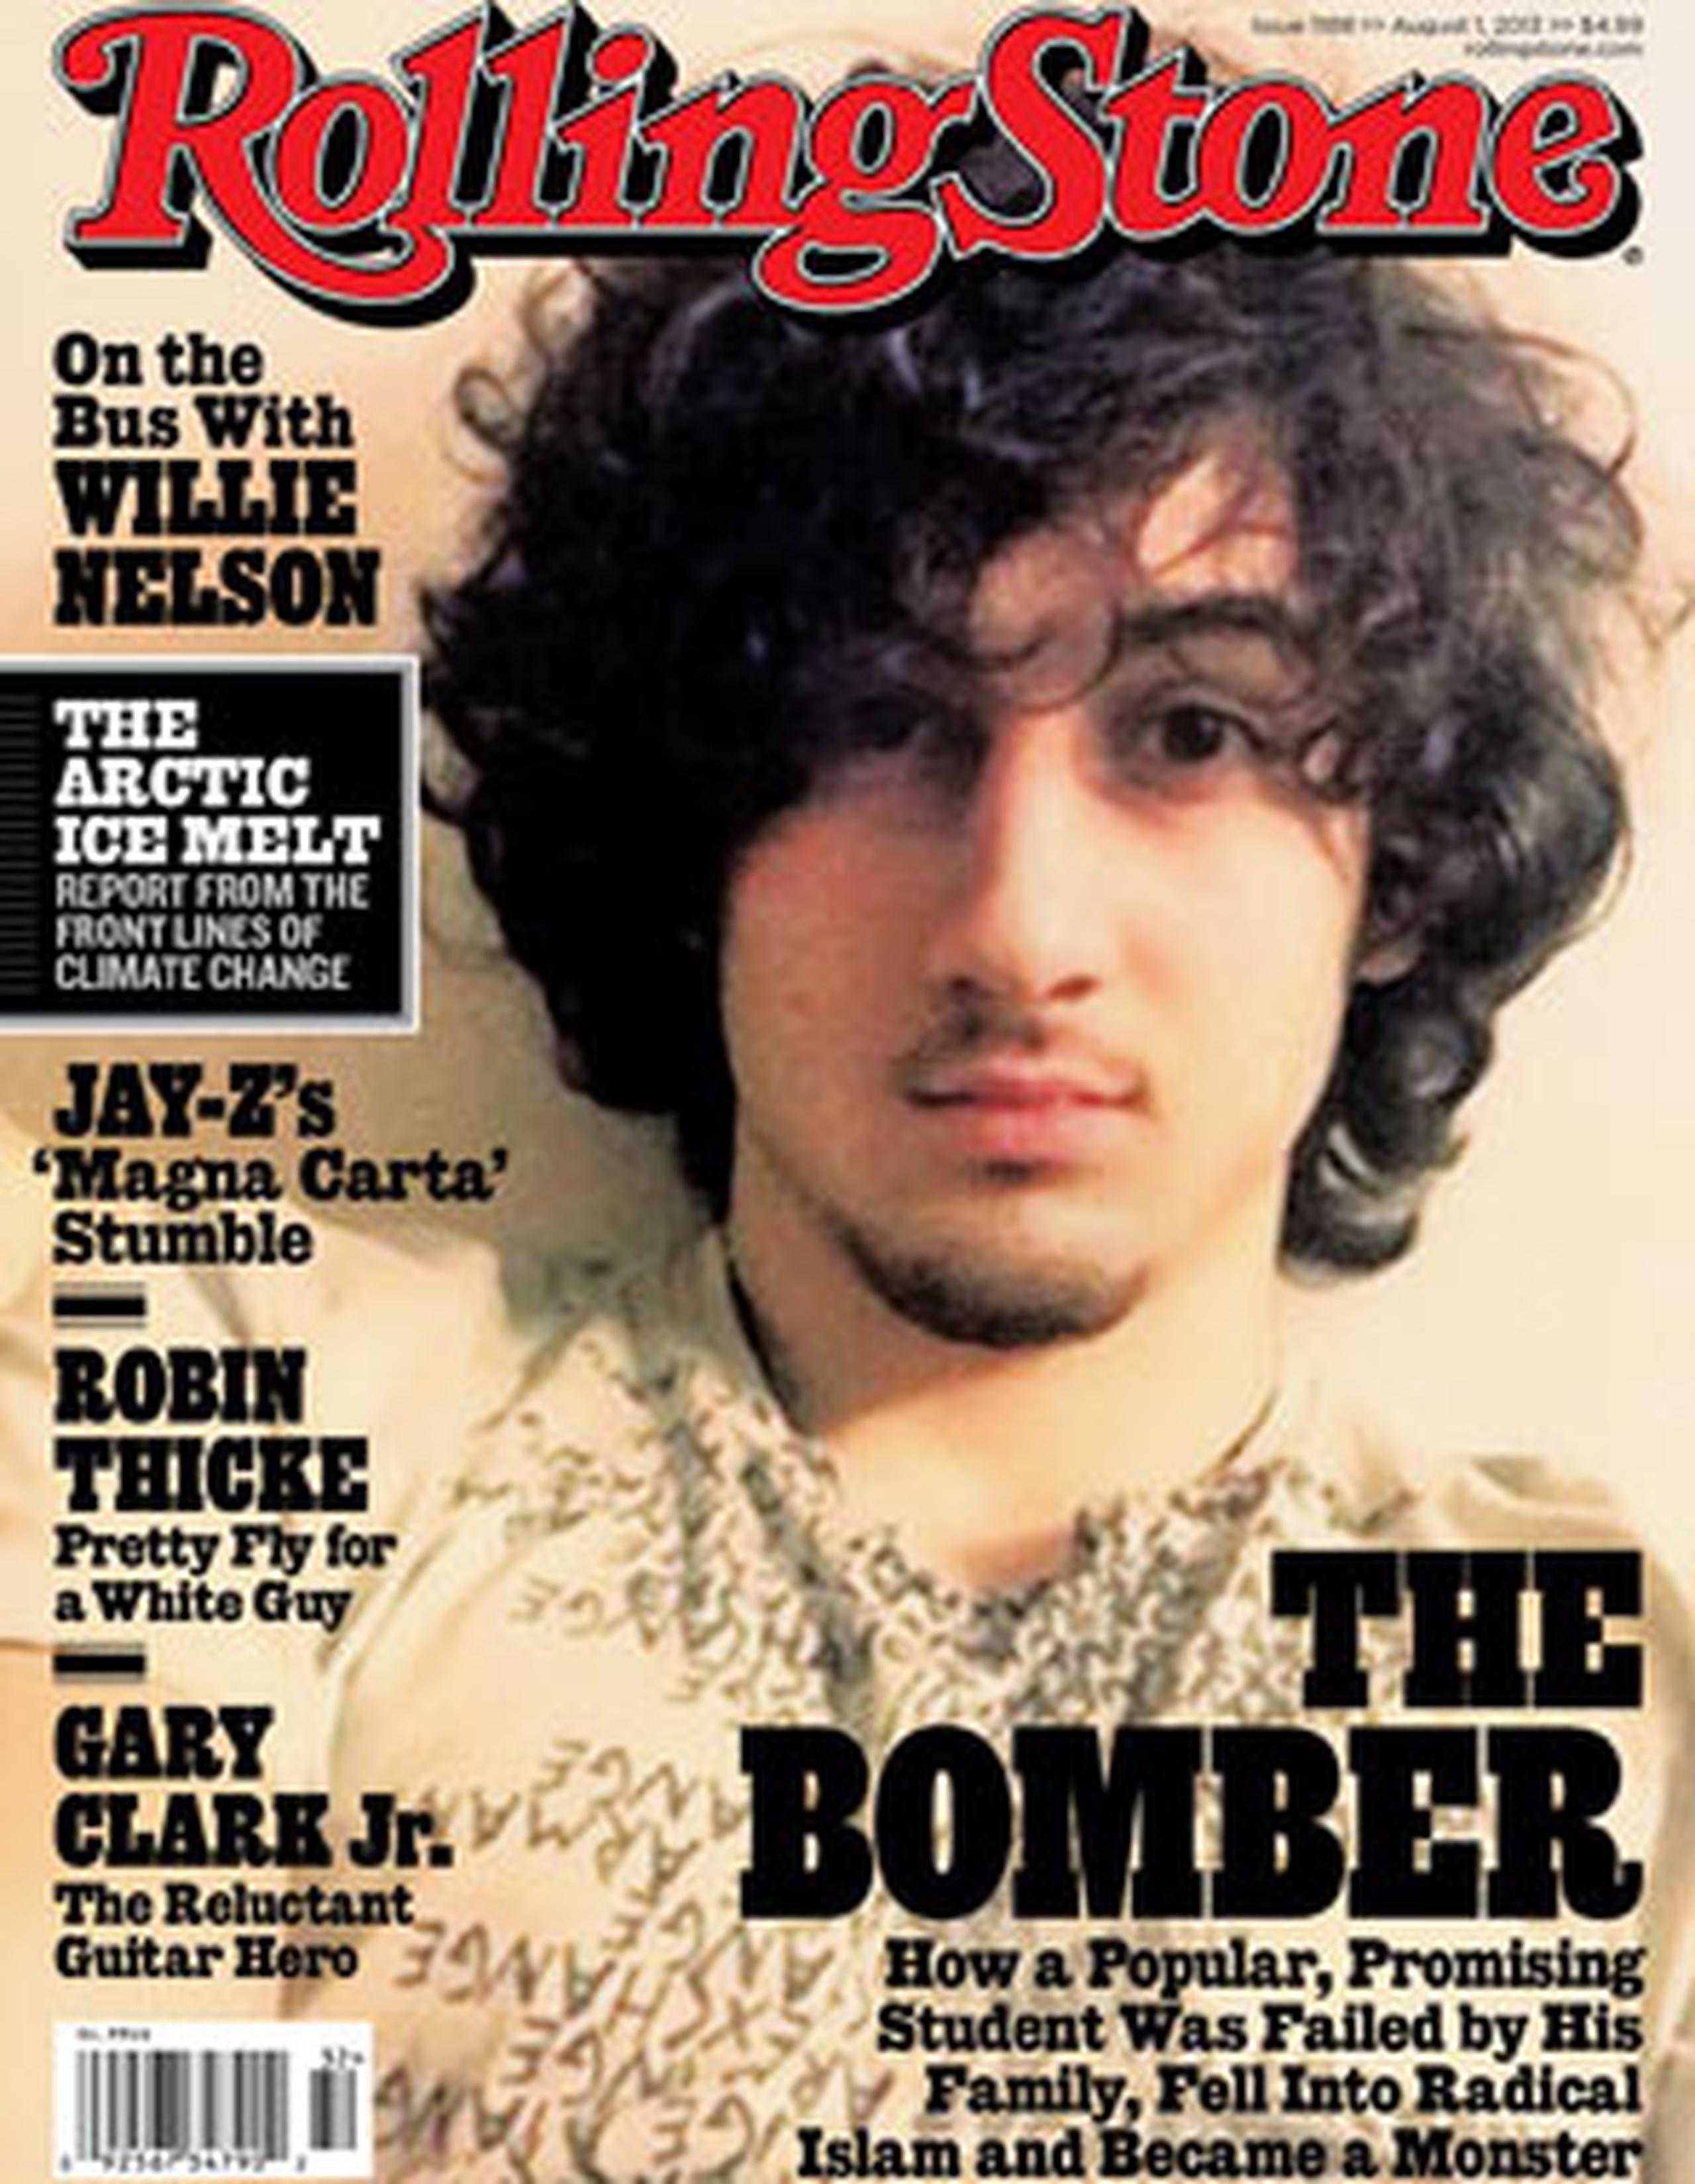 Tsarnaev se declaró inocente del ataque del 15 de abril. (AP/ Wenner Media)